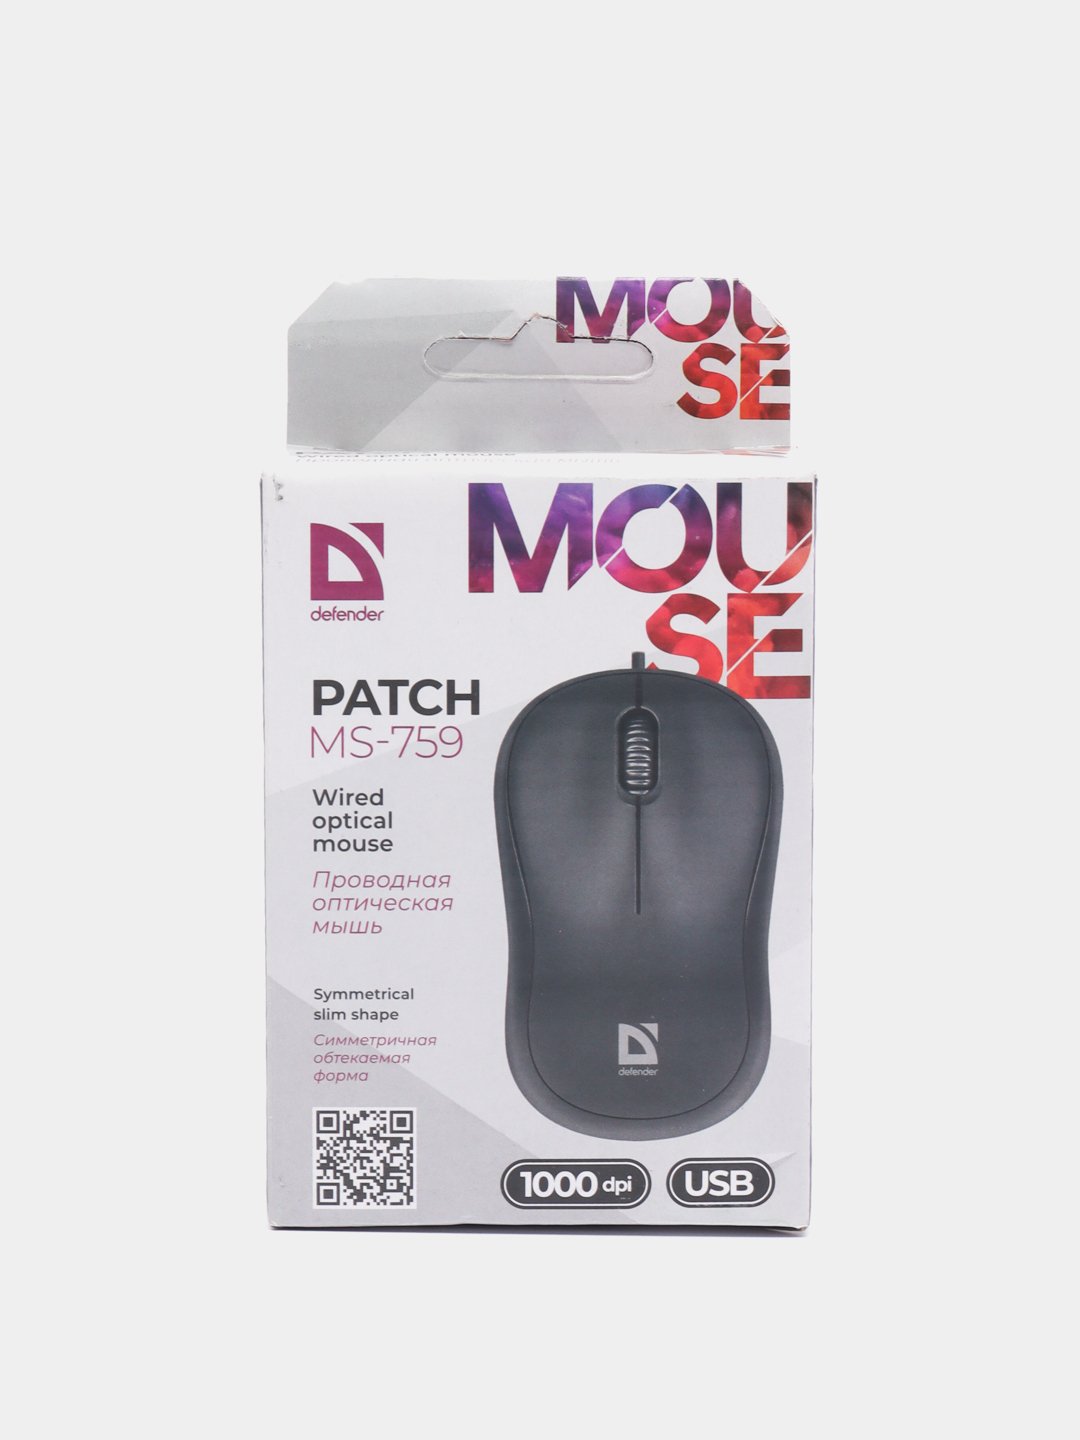 Мышь Defender Patch MS-759 USB чёрный. MS-759. Как собрать мышку обратно Defender Patch MS-759. Мышь Defender Patch MS-759.